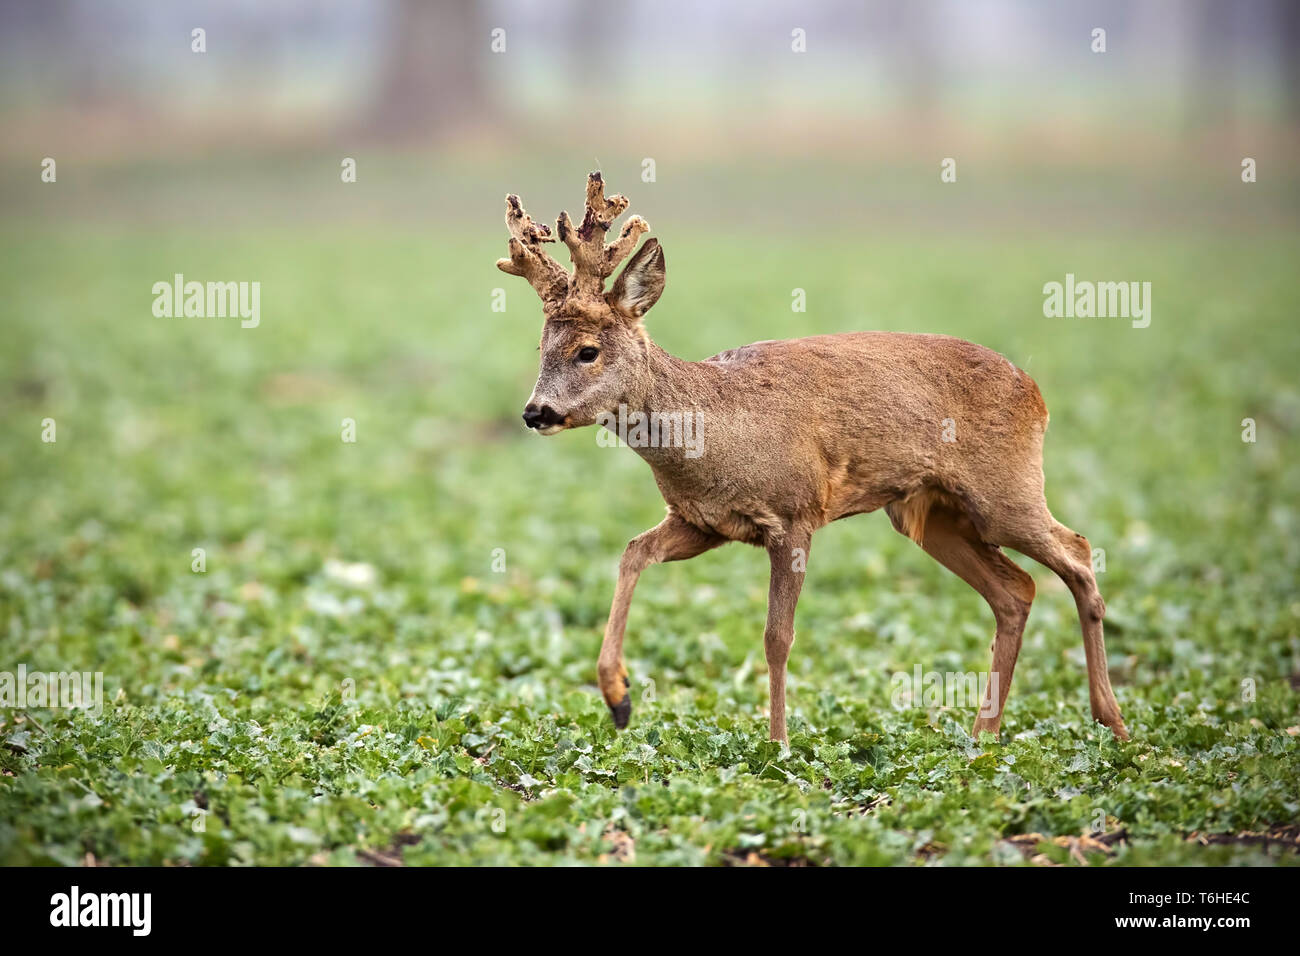 Roe deer, capreolus capreolus, buck with big antlers covered in velvet walking. Stock Photo